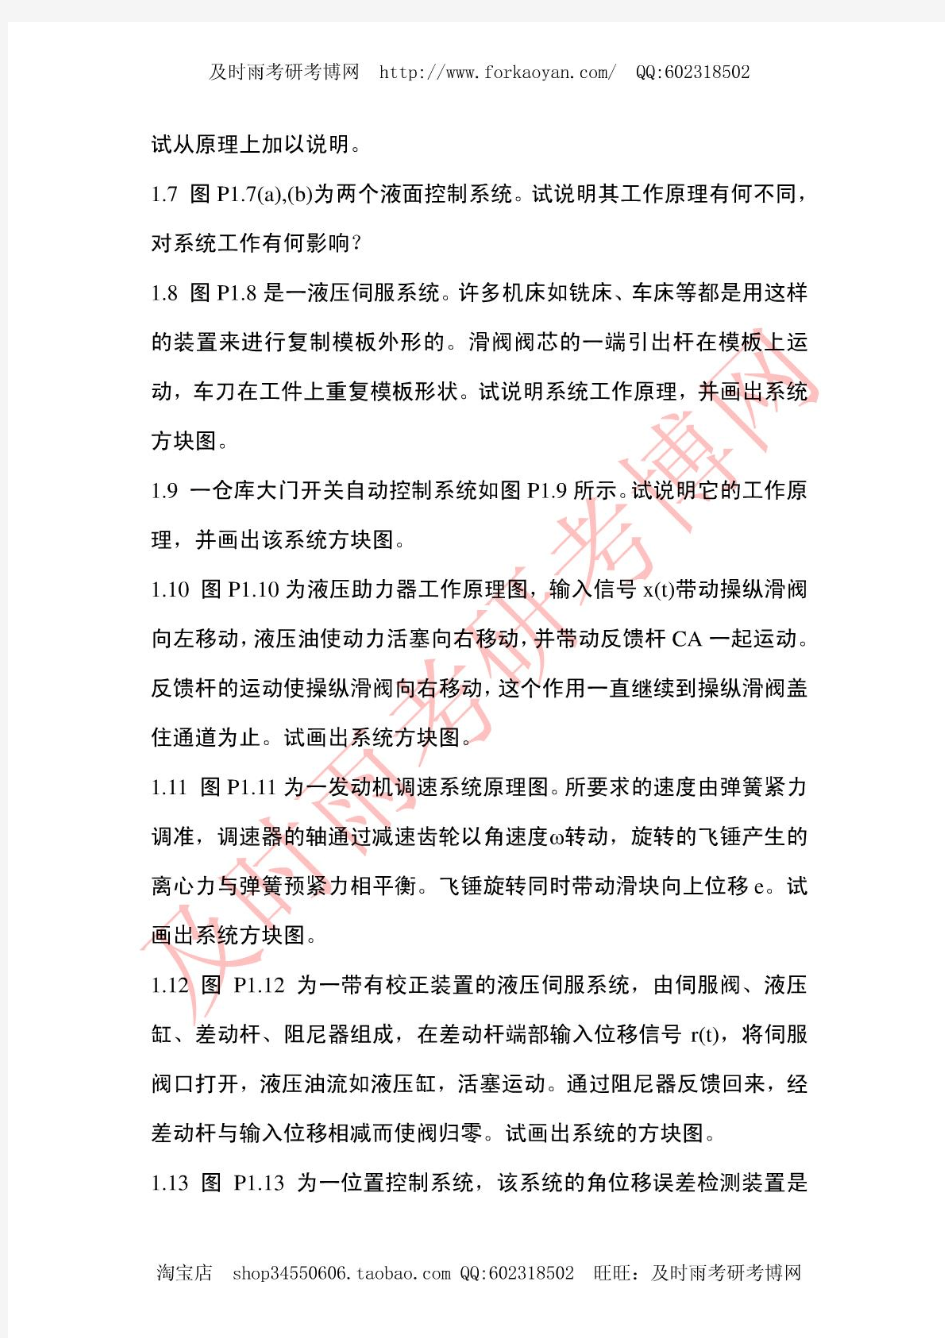 上海交大《控制理论基础》本校课后习题和部分解答(王显正版教材)共是84页